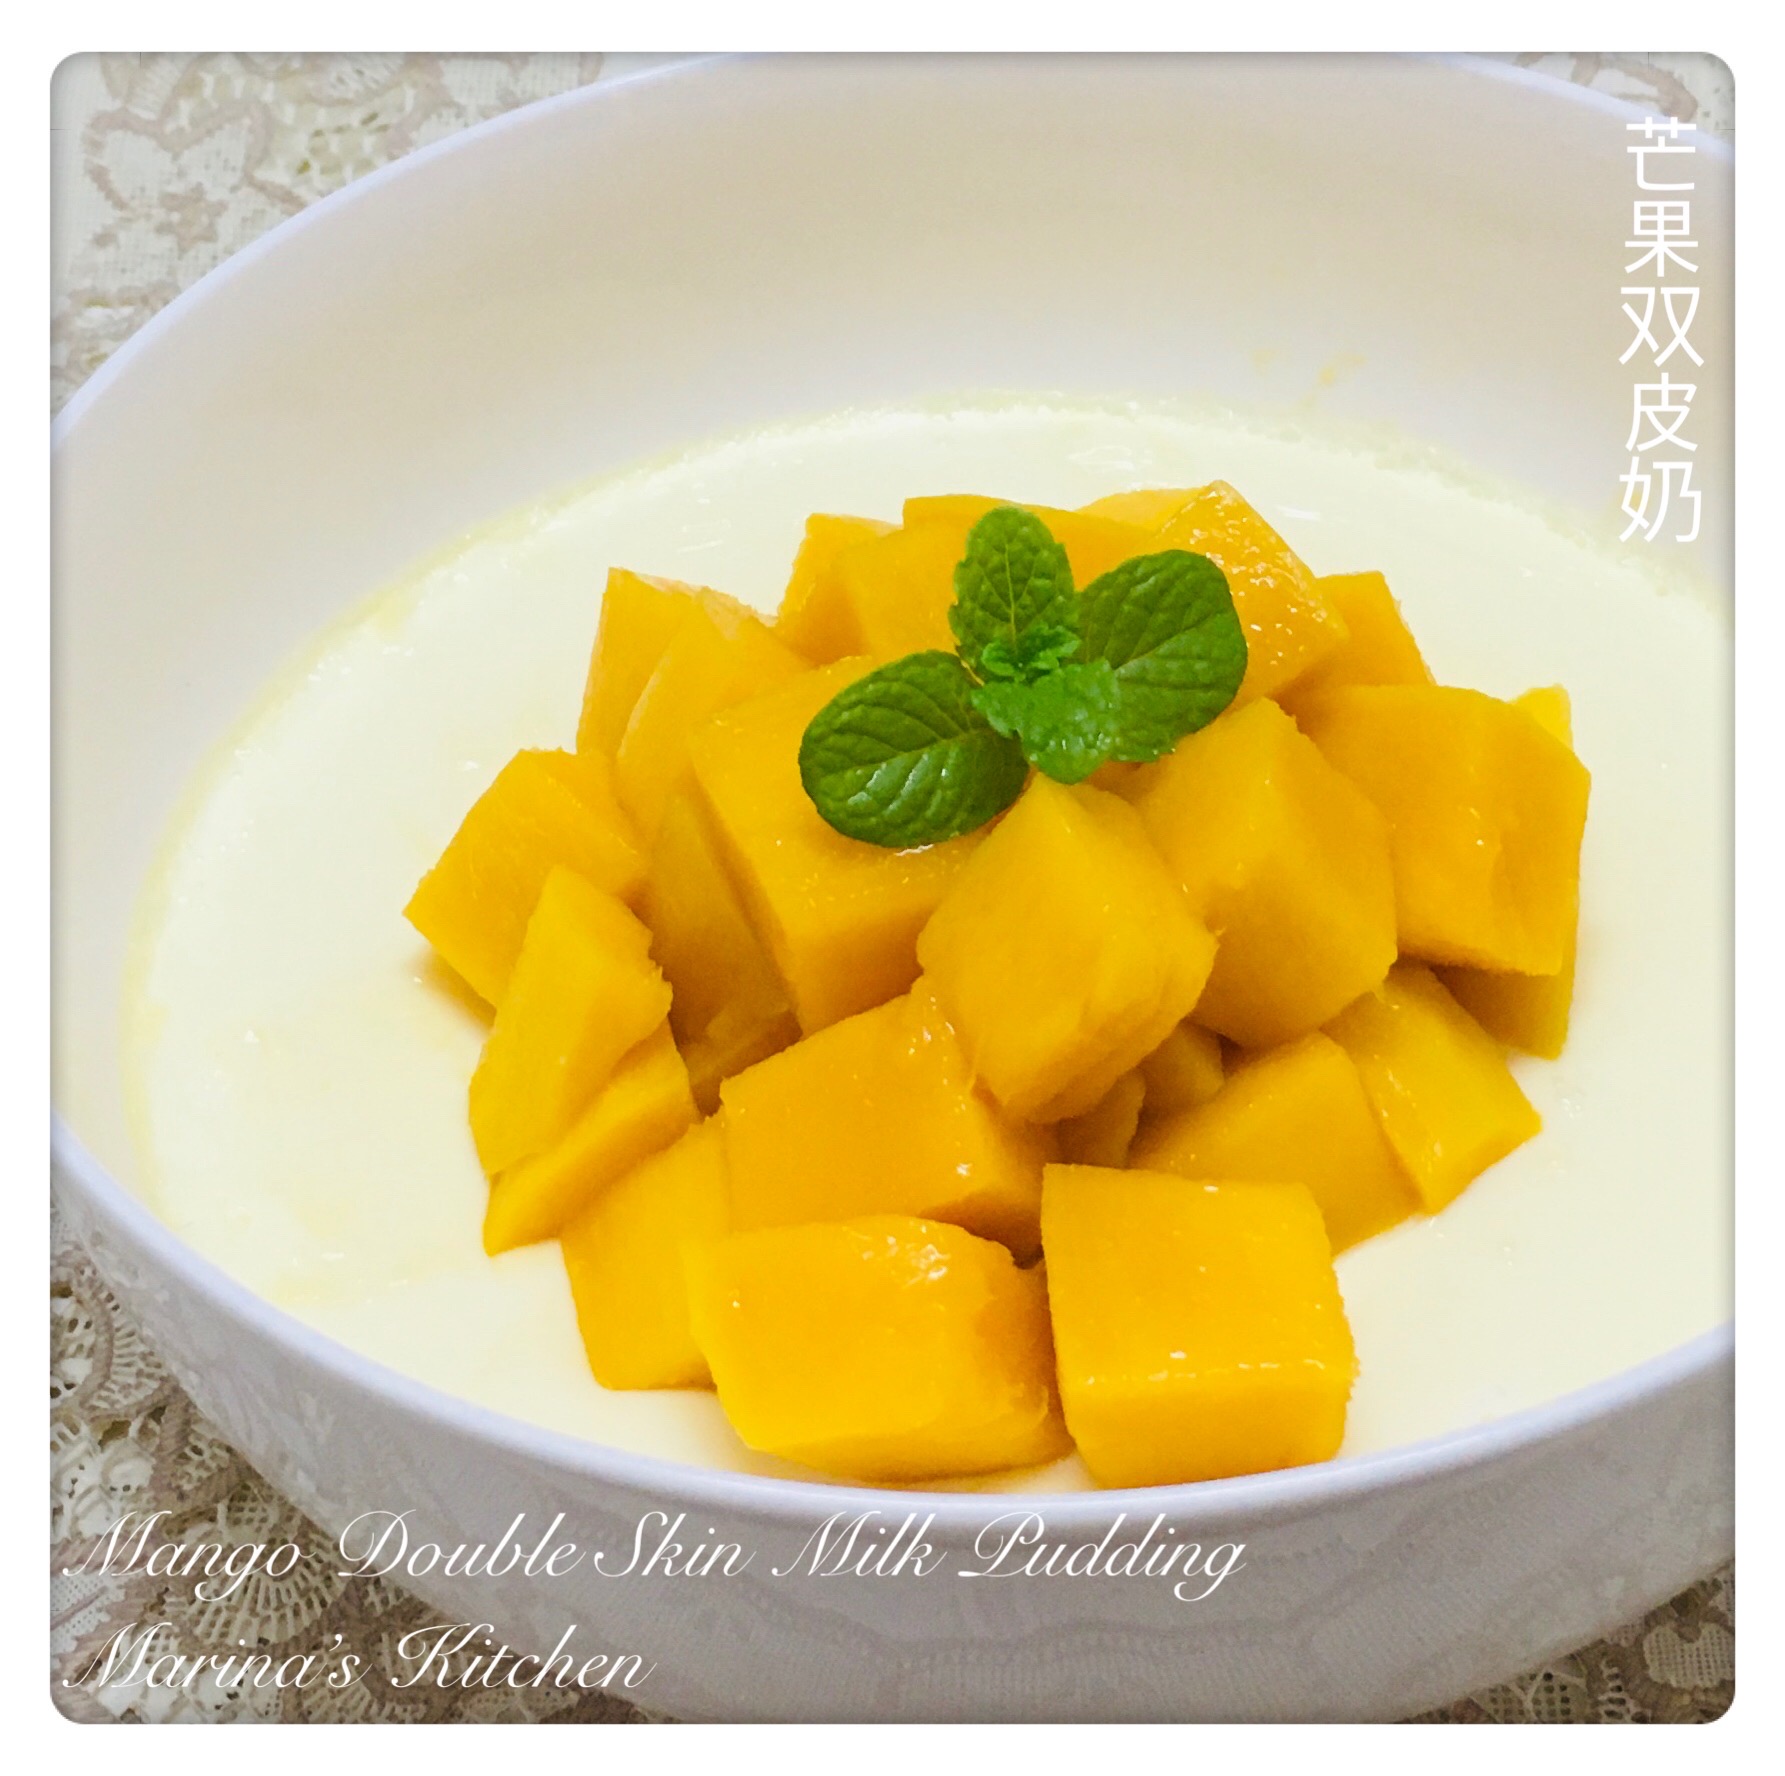 mango-double-skin-milk-pudding